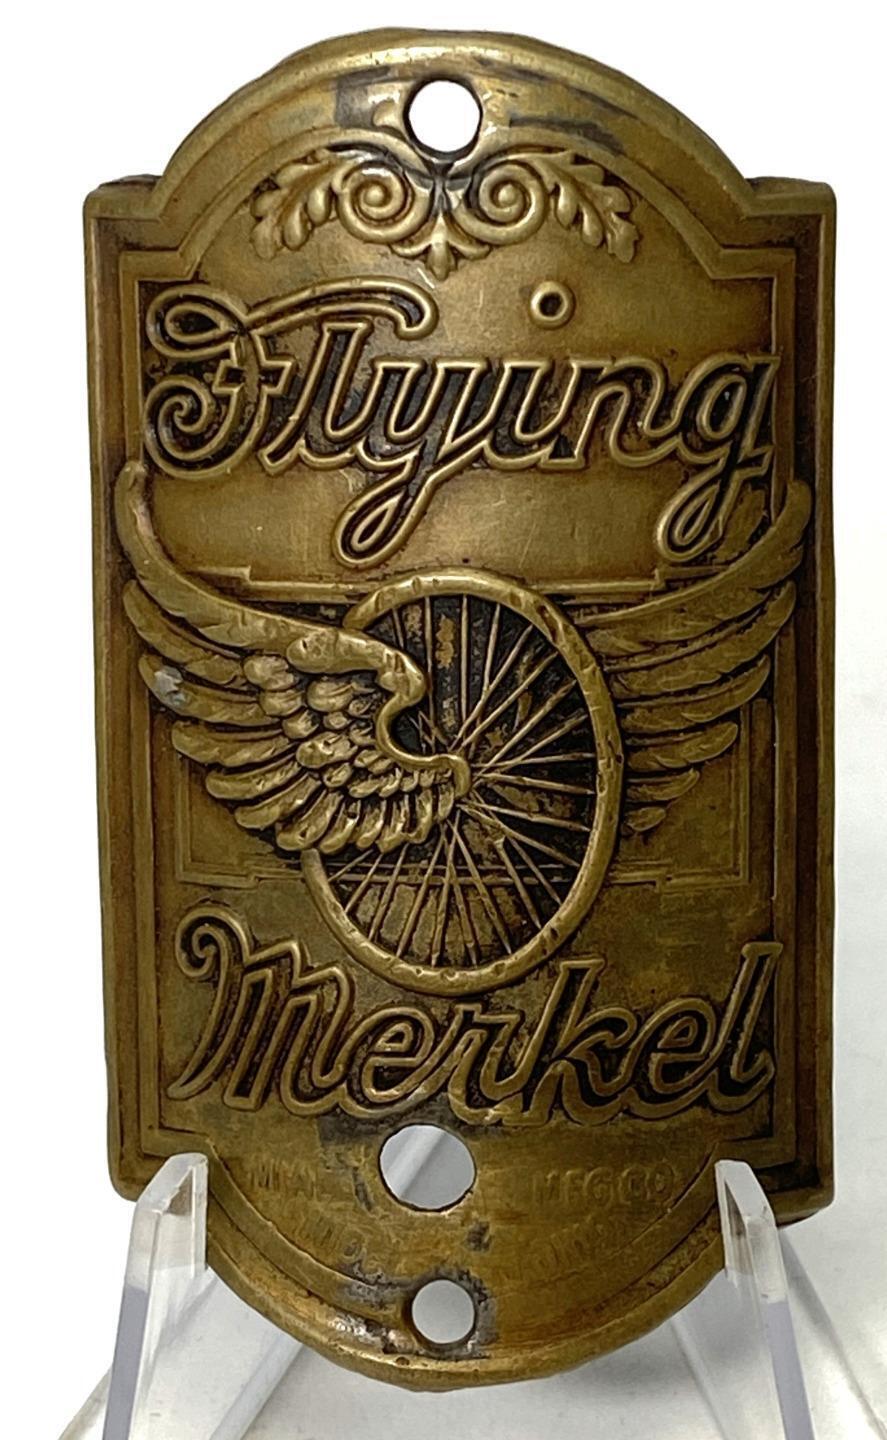 ORIGINAL vintage FLYING MERKEL bicycle motorcycle HEAD BADGE tag emblem